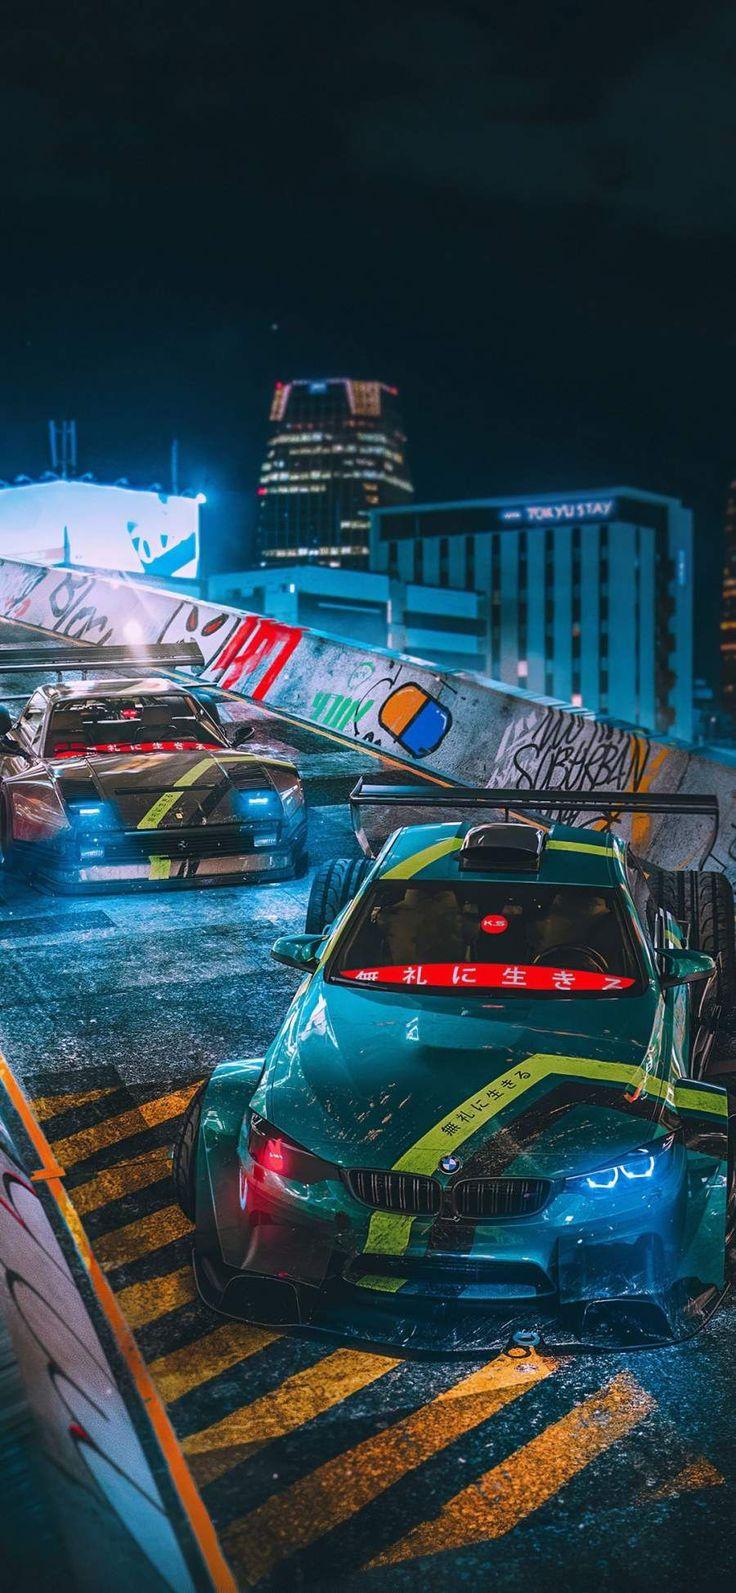 Tokyo Drift Cars iPhone Wallpaper